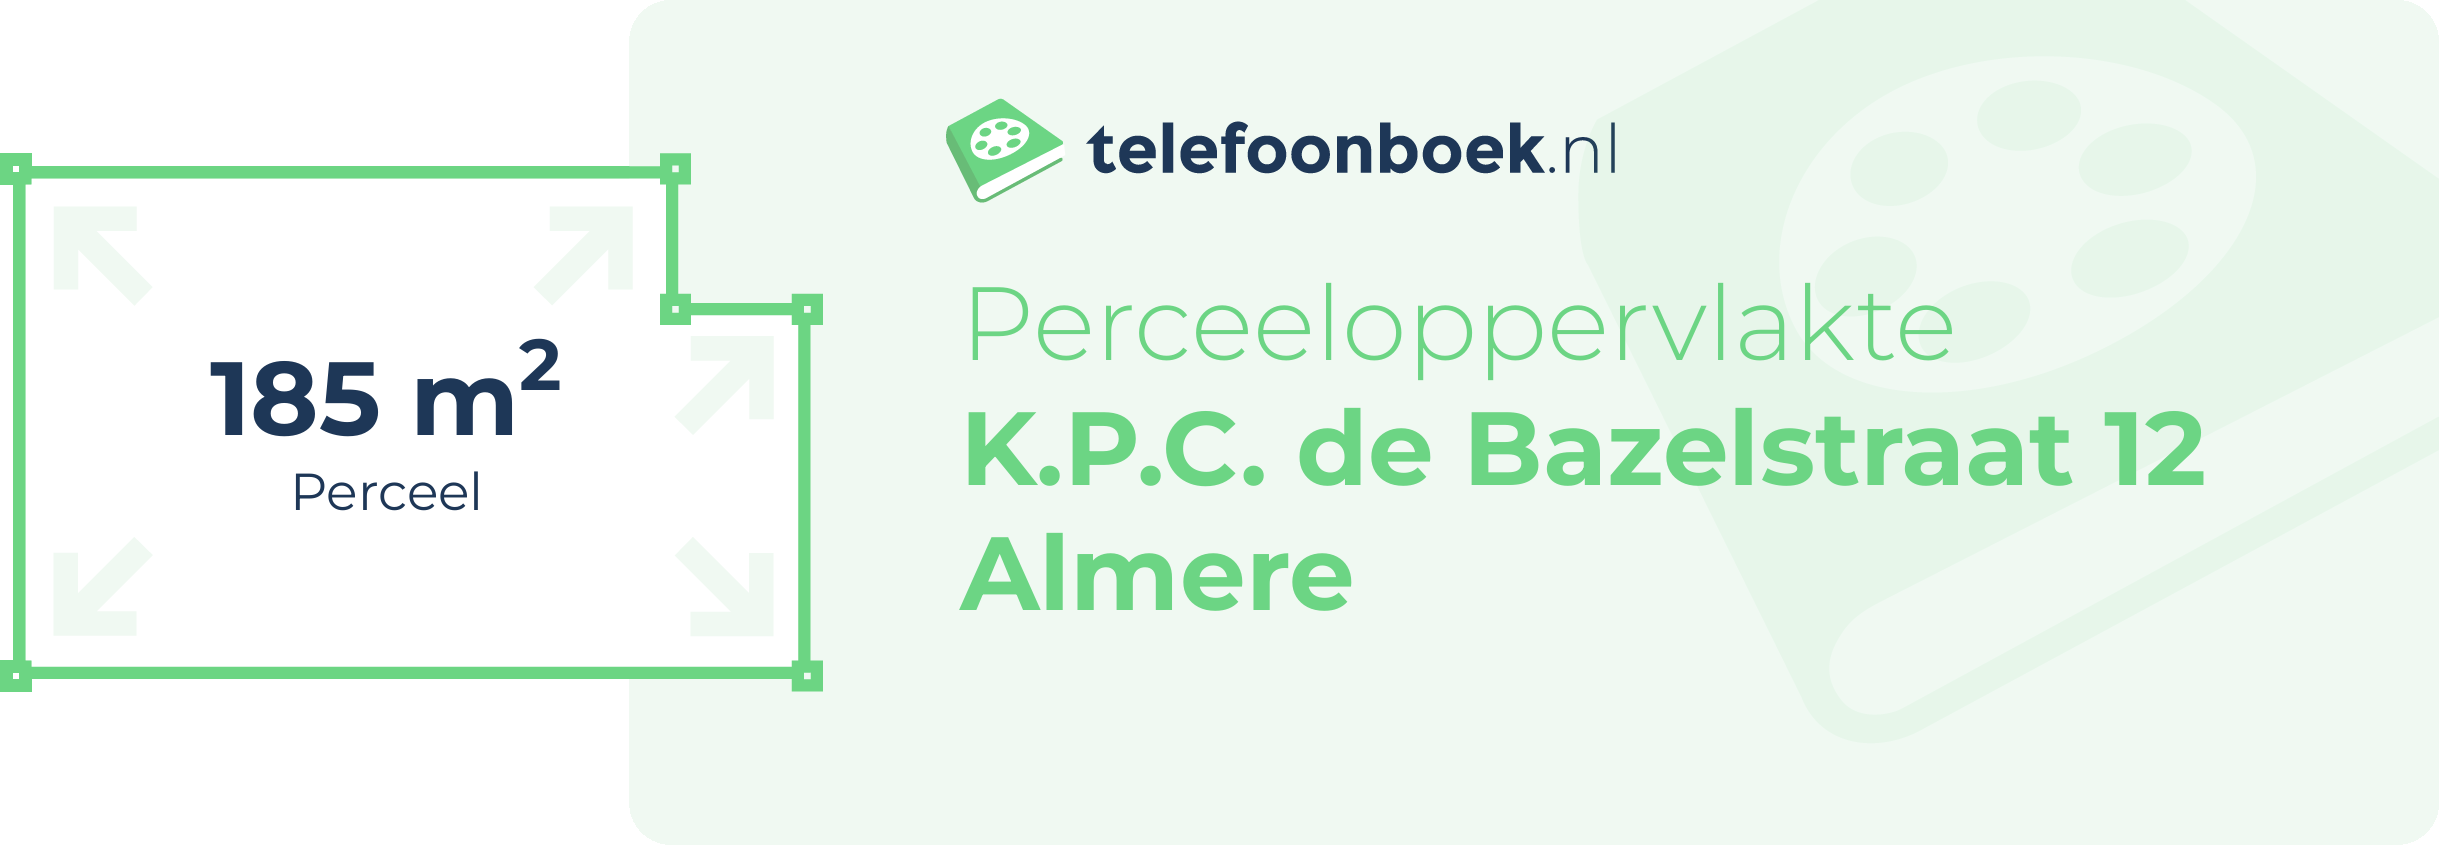 Perceeloppervlakte K.P.C. De Bazelstraat 12 Almere